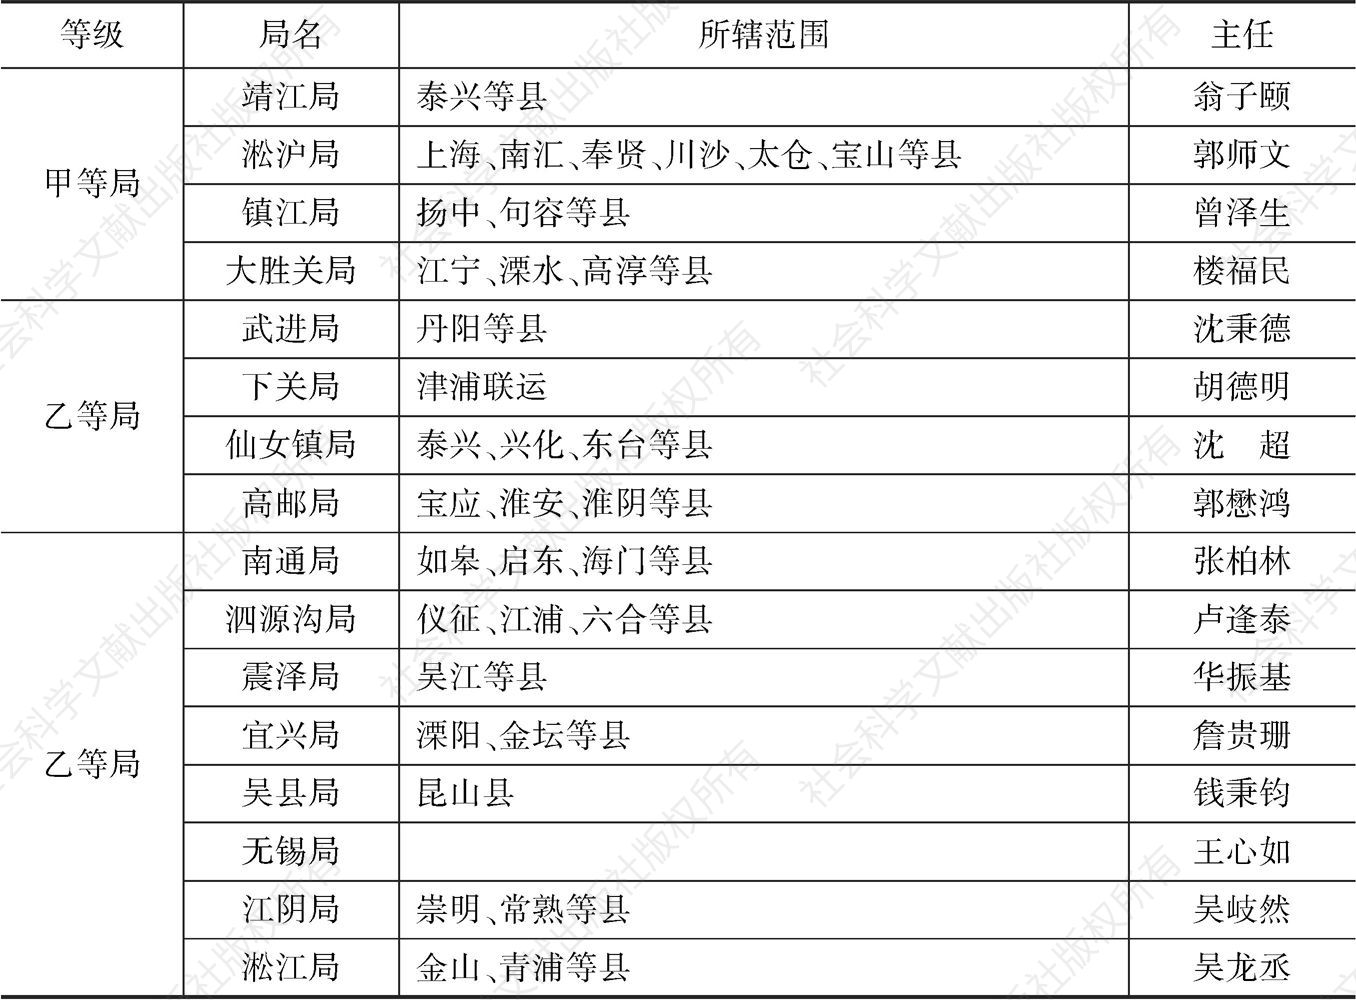 表1-3 江苏省特种营业税征收局所辖范围及主任姓名